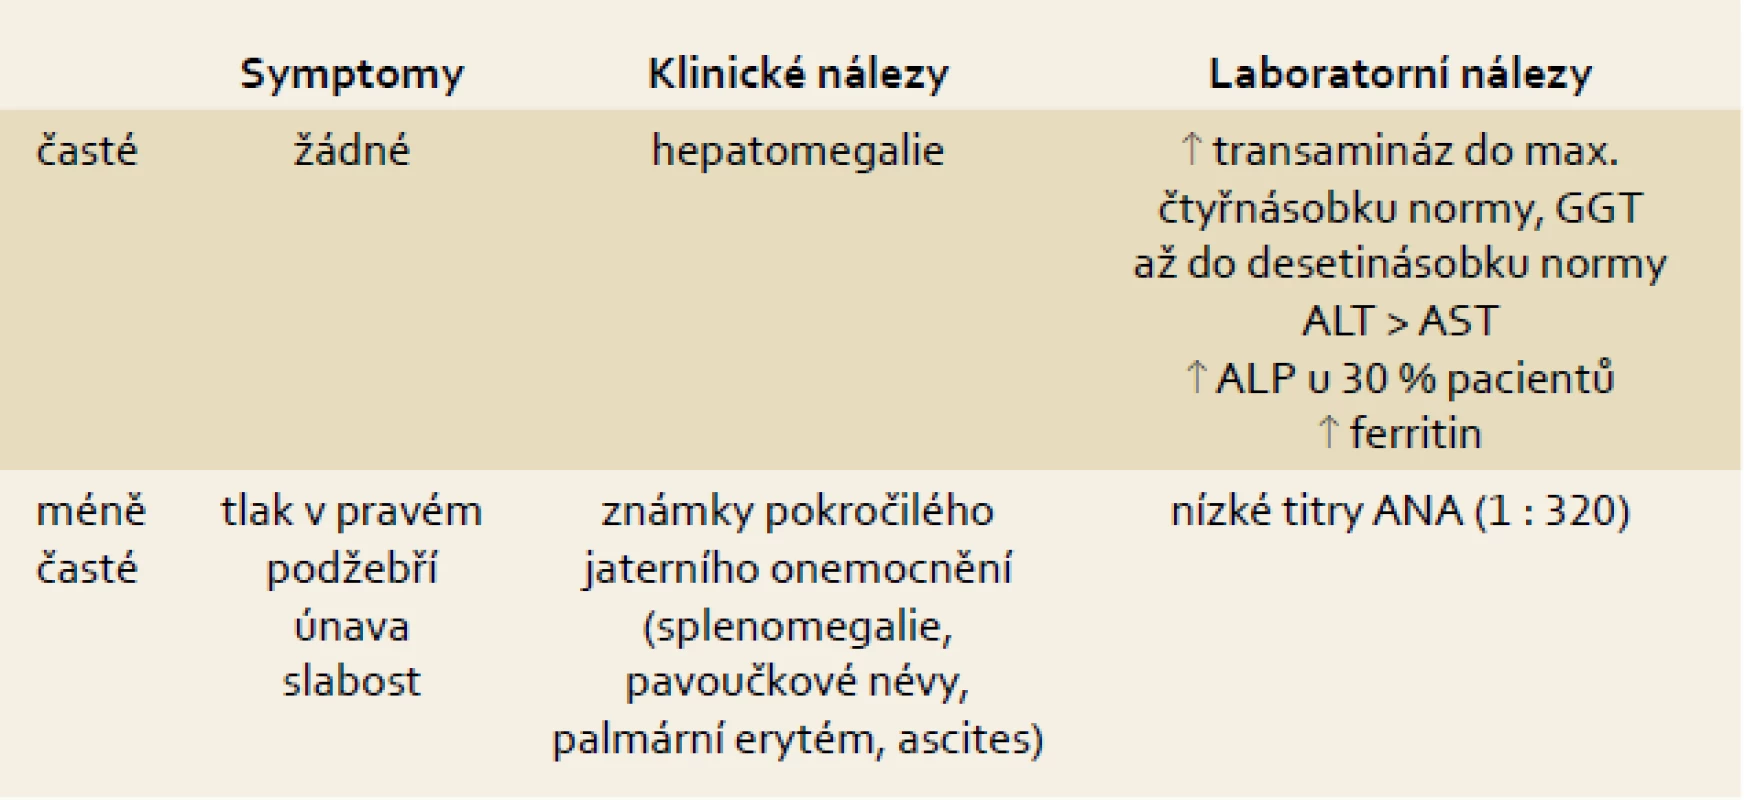 Symptomy, klinické a laboratorní známky NAFLD.
Tab. 1. Symptoms, clinical and laboratory findings.